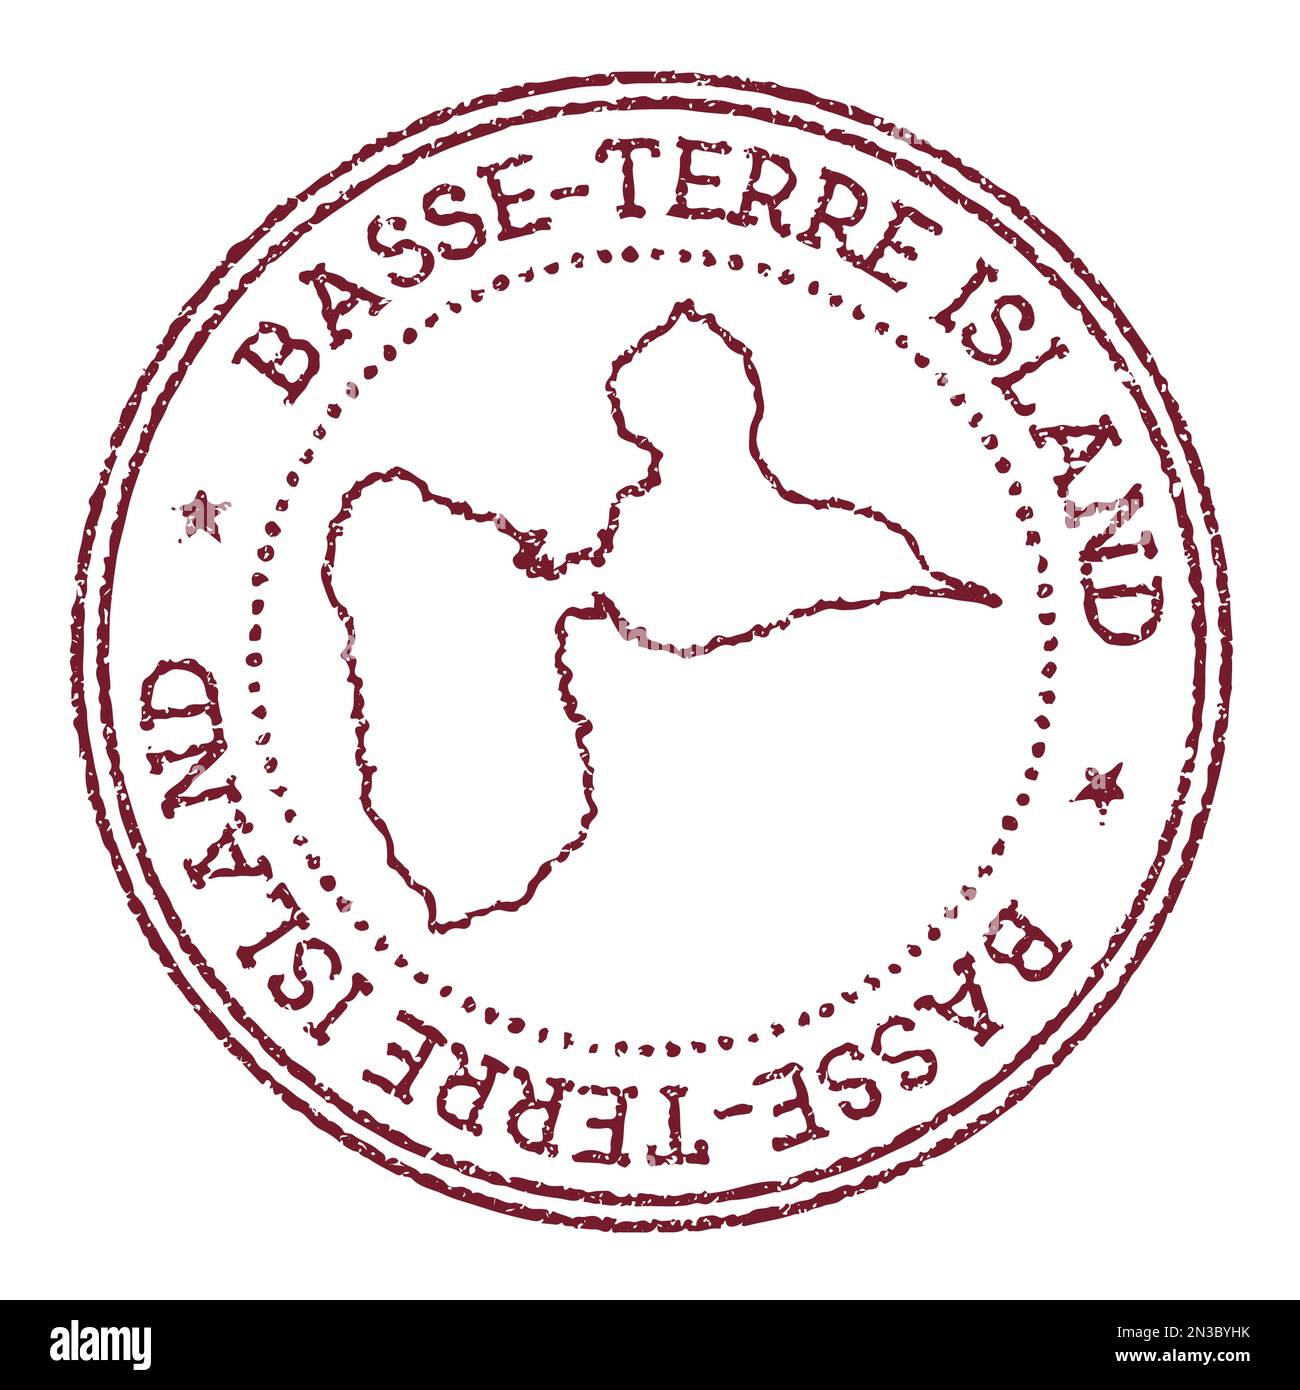 Timbre rond en caoutchouc de l'île de Basse-Terre avec carte de l'île. Timbre passeport rouge vintage avec texte circulaire et étoiles, illustration vectorielle. Illustration de Vecteur